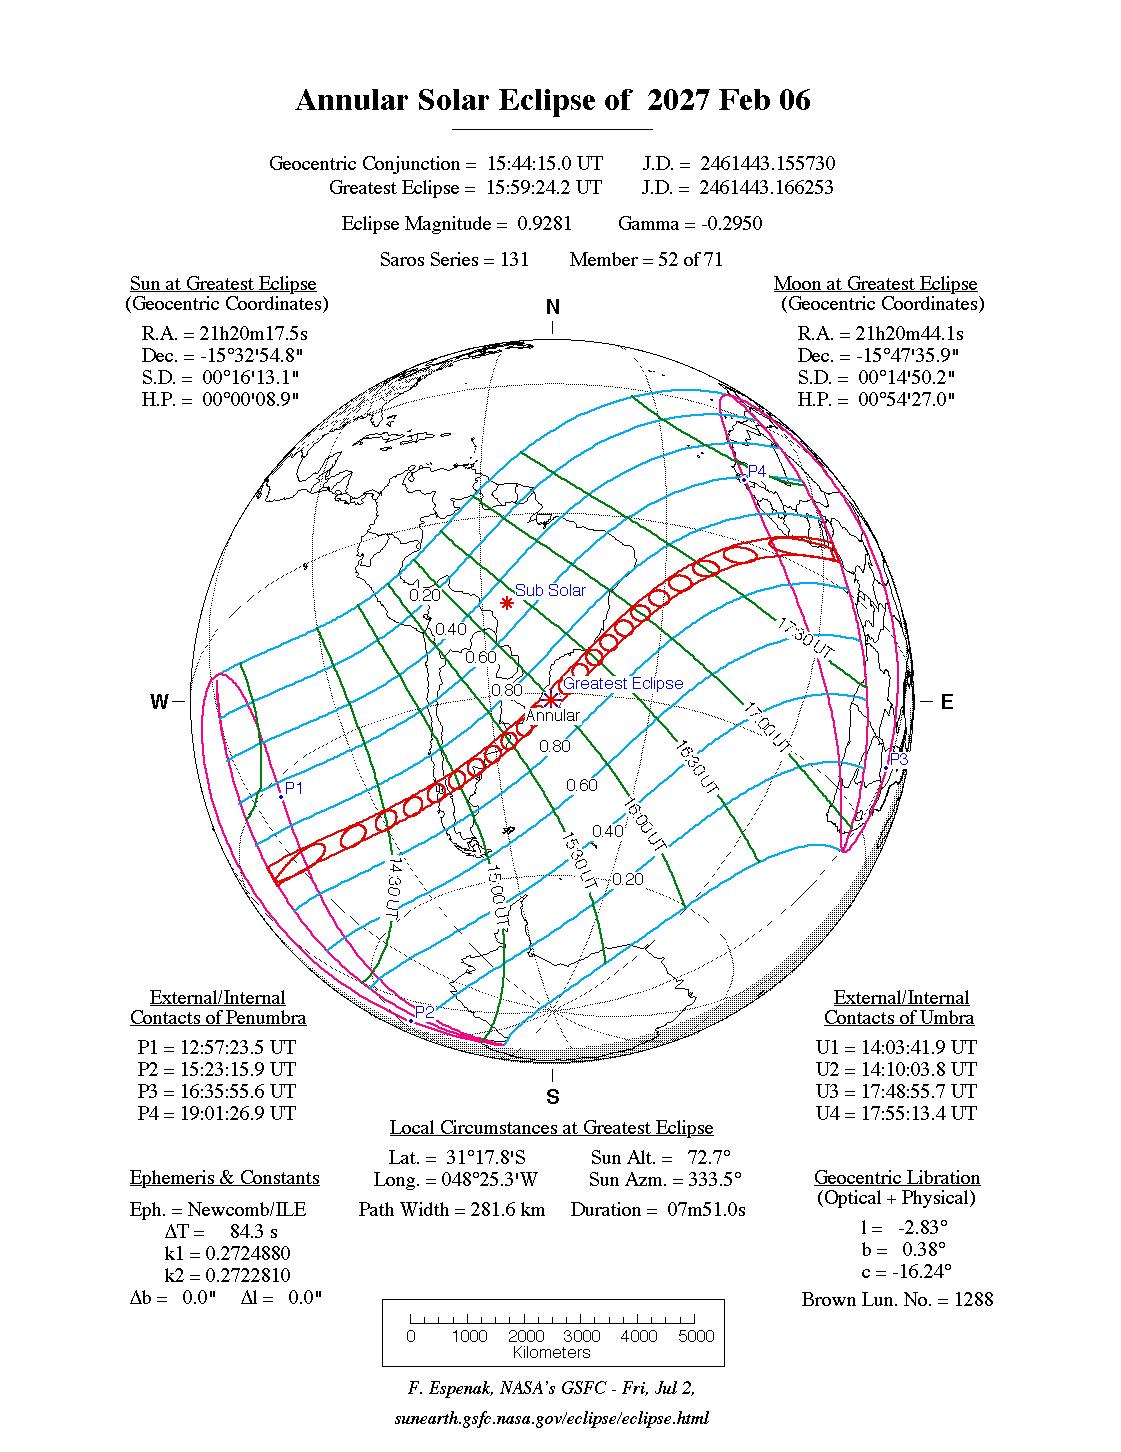 Verlauf der Ringförmigen Sonnenfinsternis am 06.02.2027